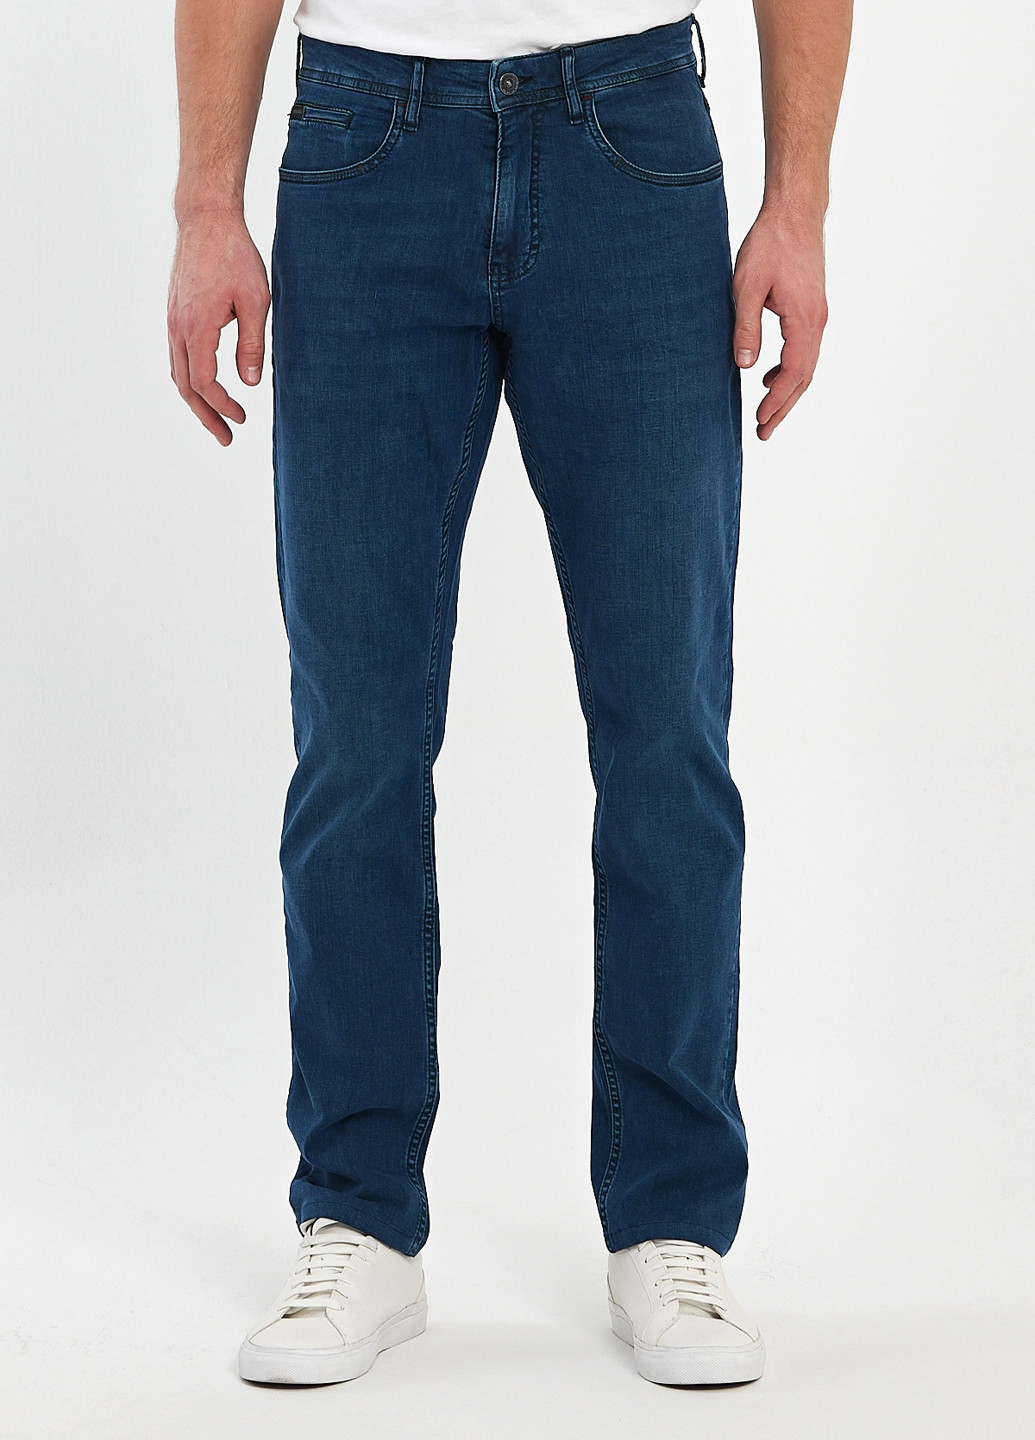 Темно-синие демисезонные регюлар фит джинсы Trend Collection